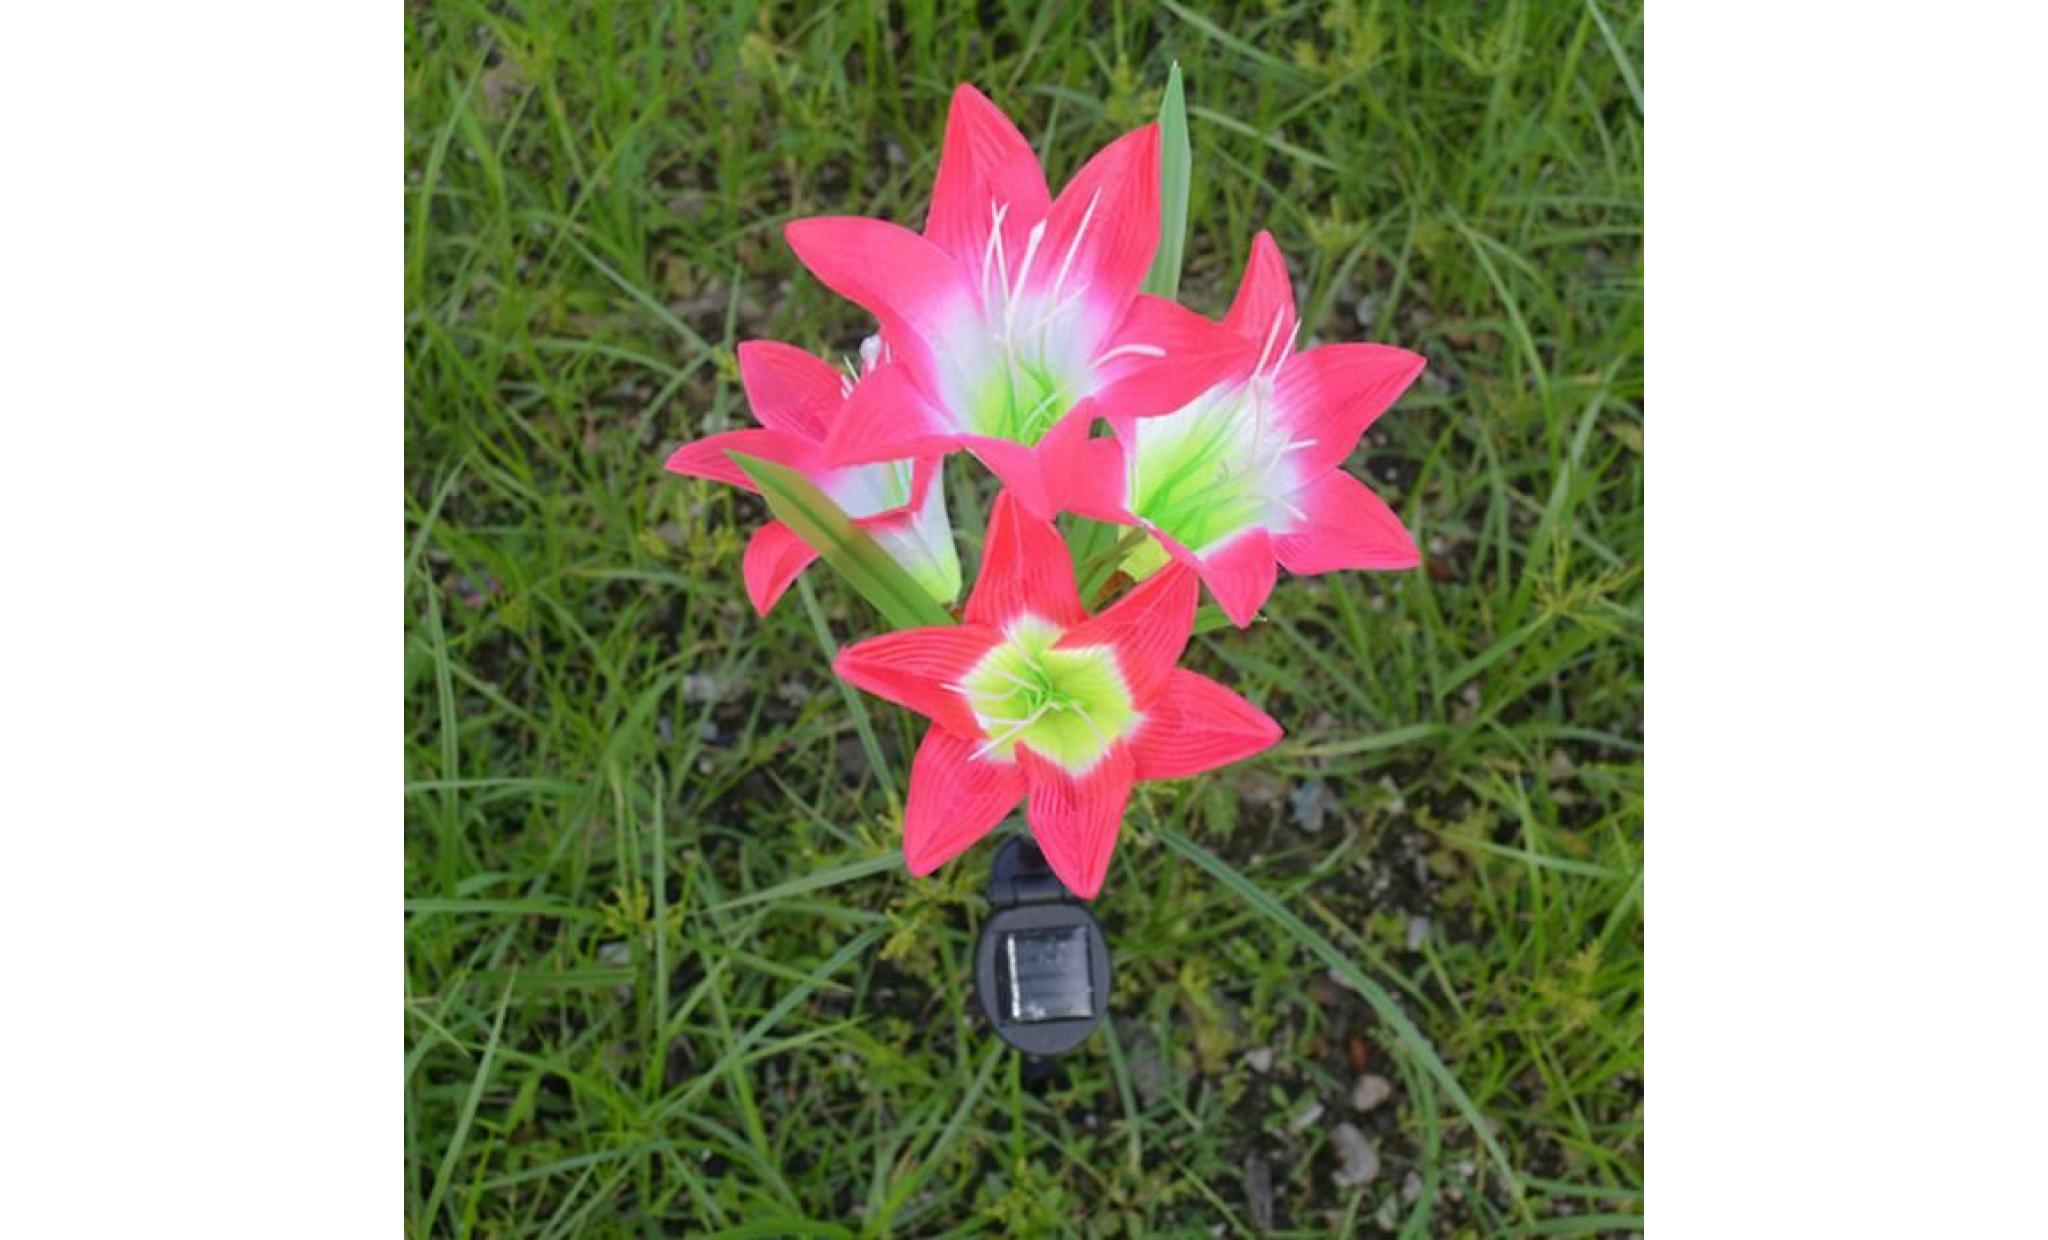 2 pièces lily flower garden powered solaire stake lumières fleurs artificielles led li639650 pas cher